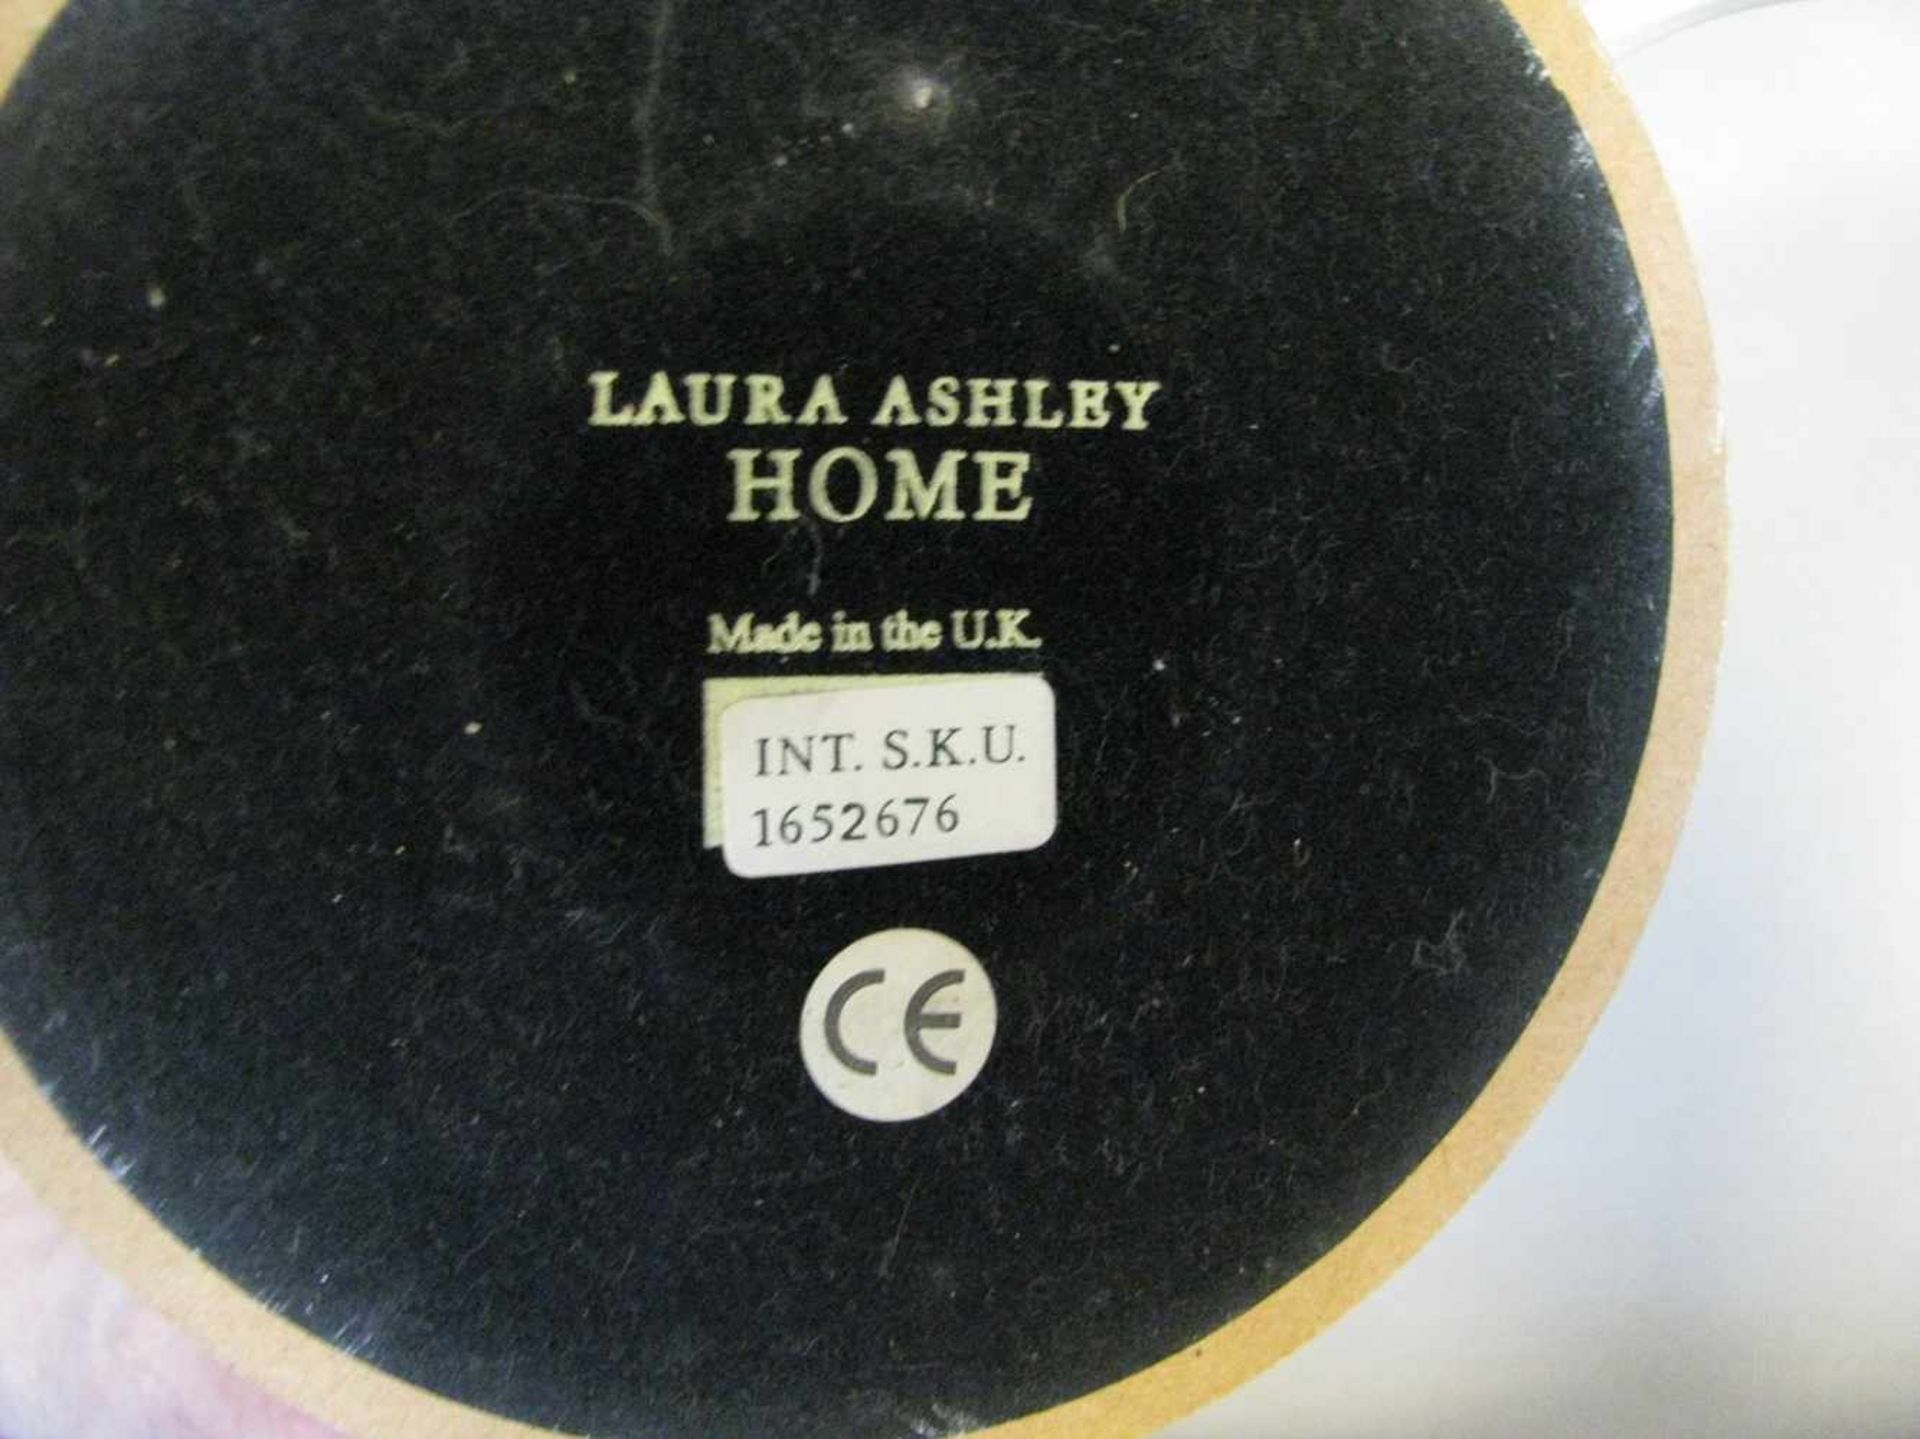 Tischlampe, Laura Ashley, crèmefarben gefasster Holzfuß, einflammig, gem., h 41 cm, d 31 cm. - Bild 2 aus 2